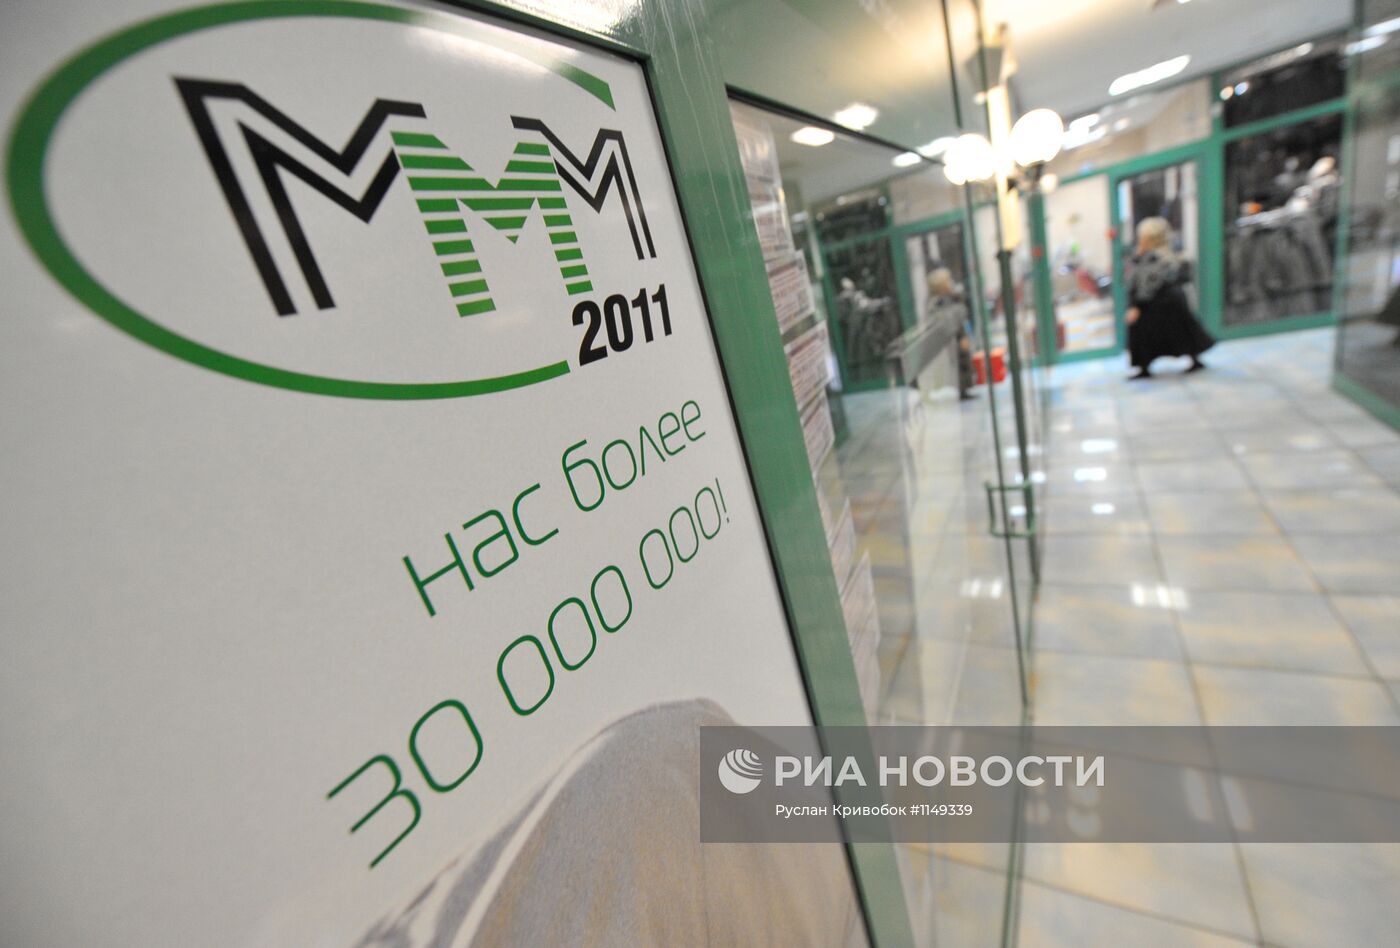 Офис "МММ 2011" у станции метро "Речной вокзал" в Москве